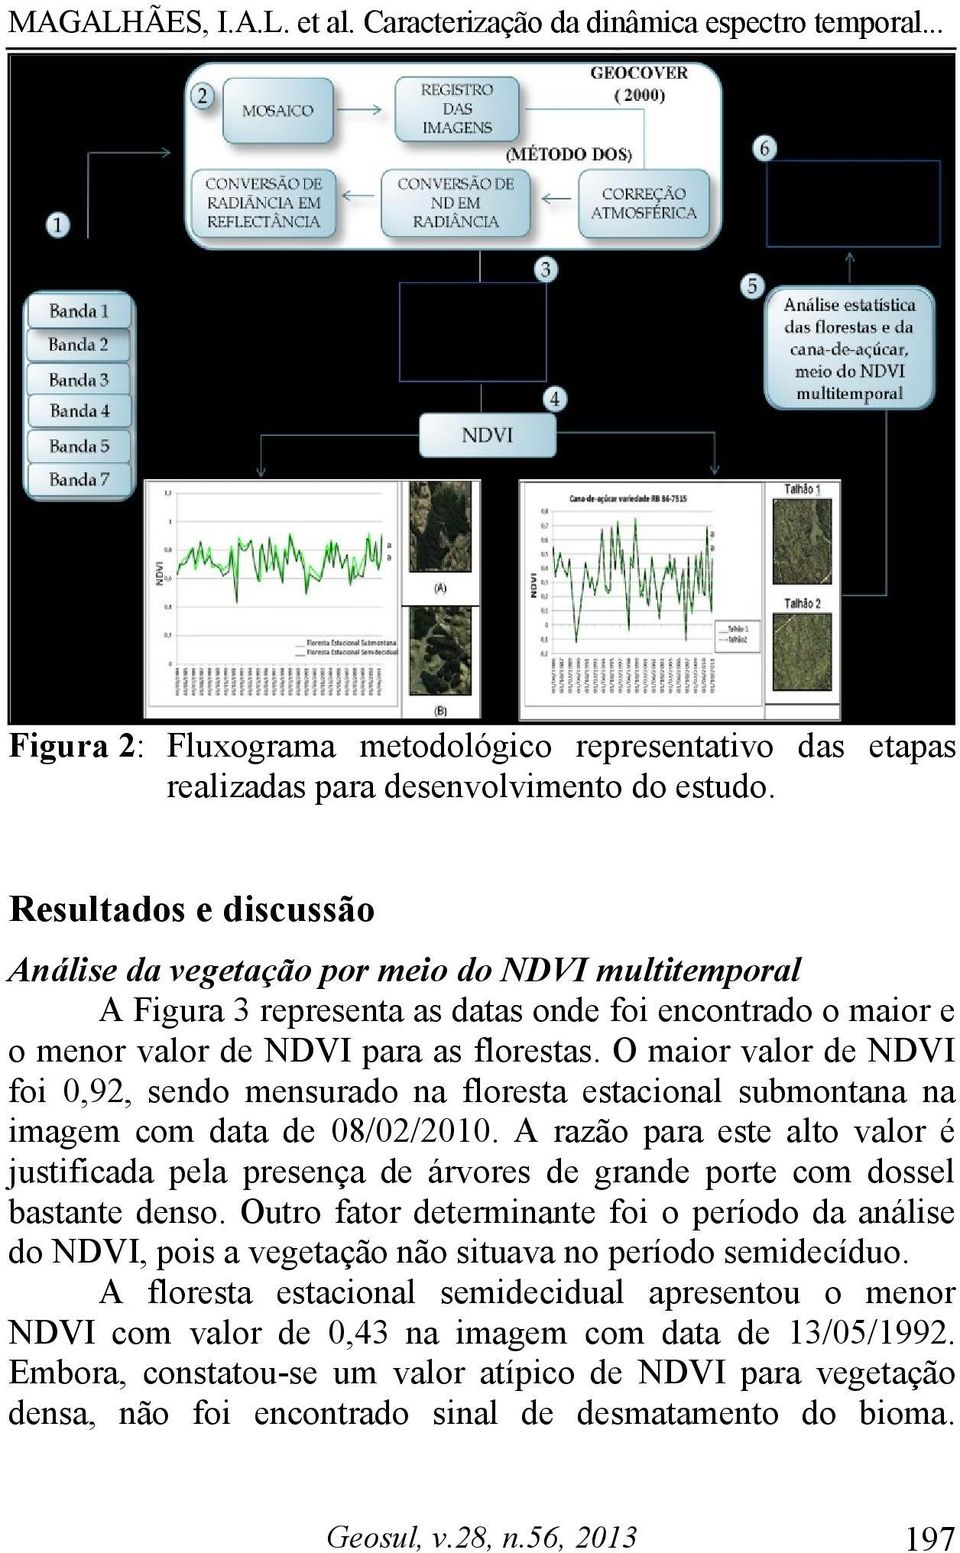 O maior valor de NDVI foi 0,92, sendo mensurado na floresta estacional submontana na imagem com data de 08/02/2010.